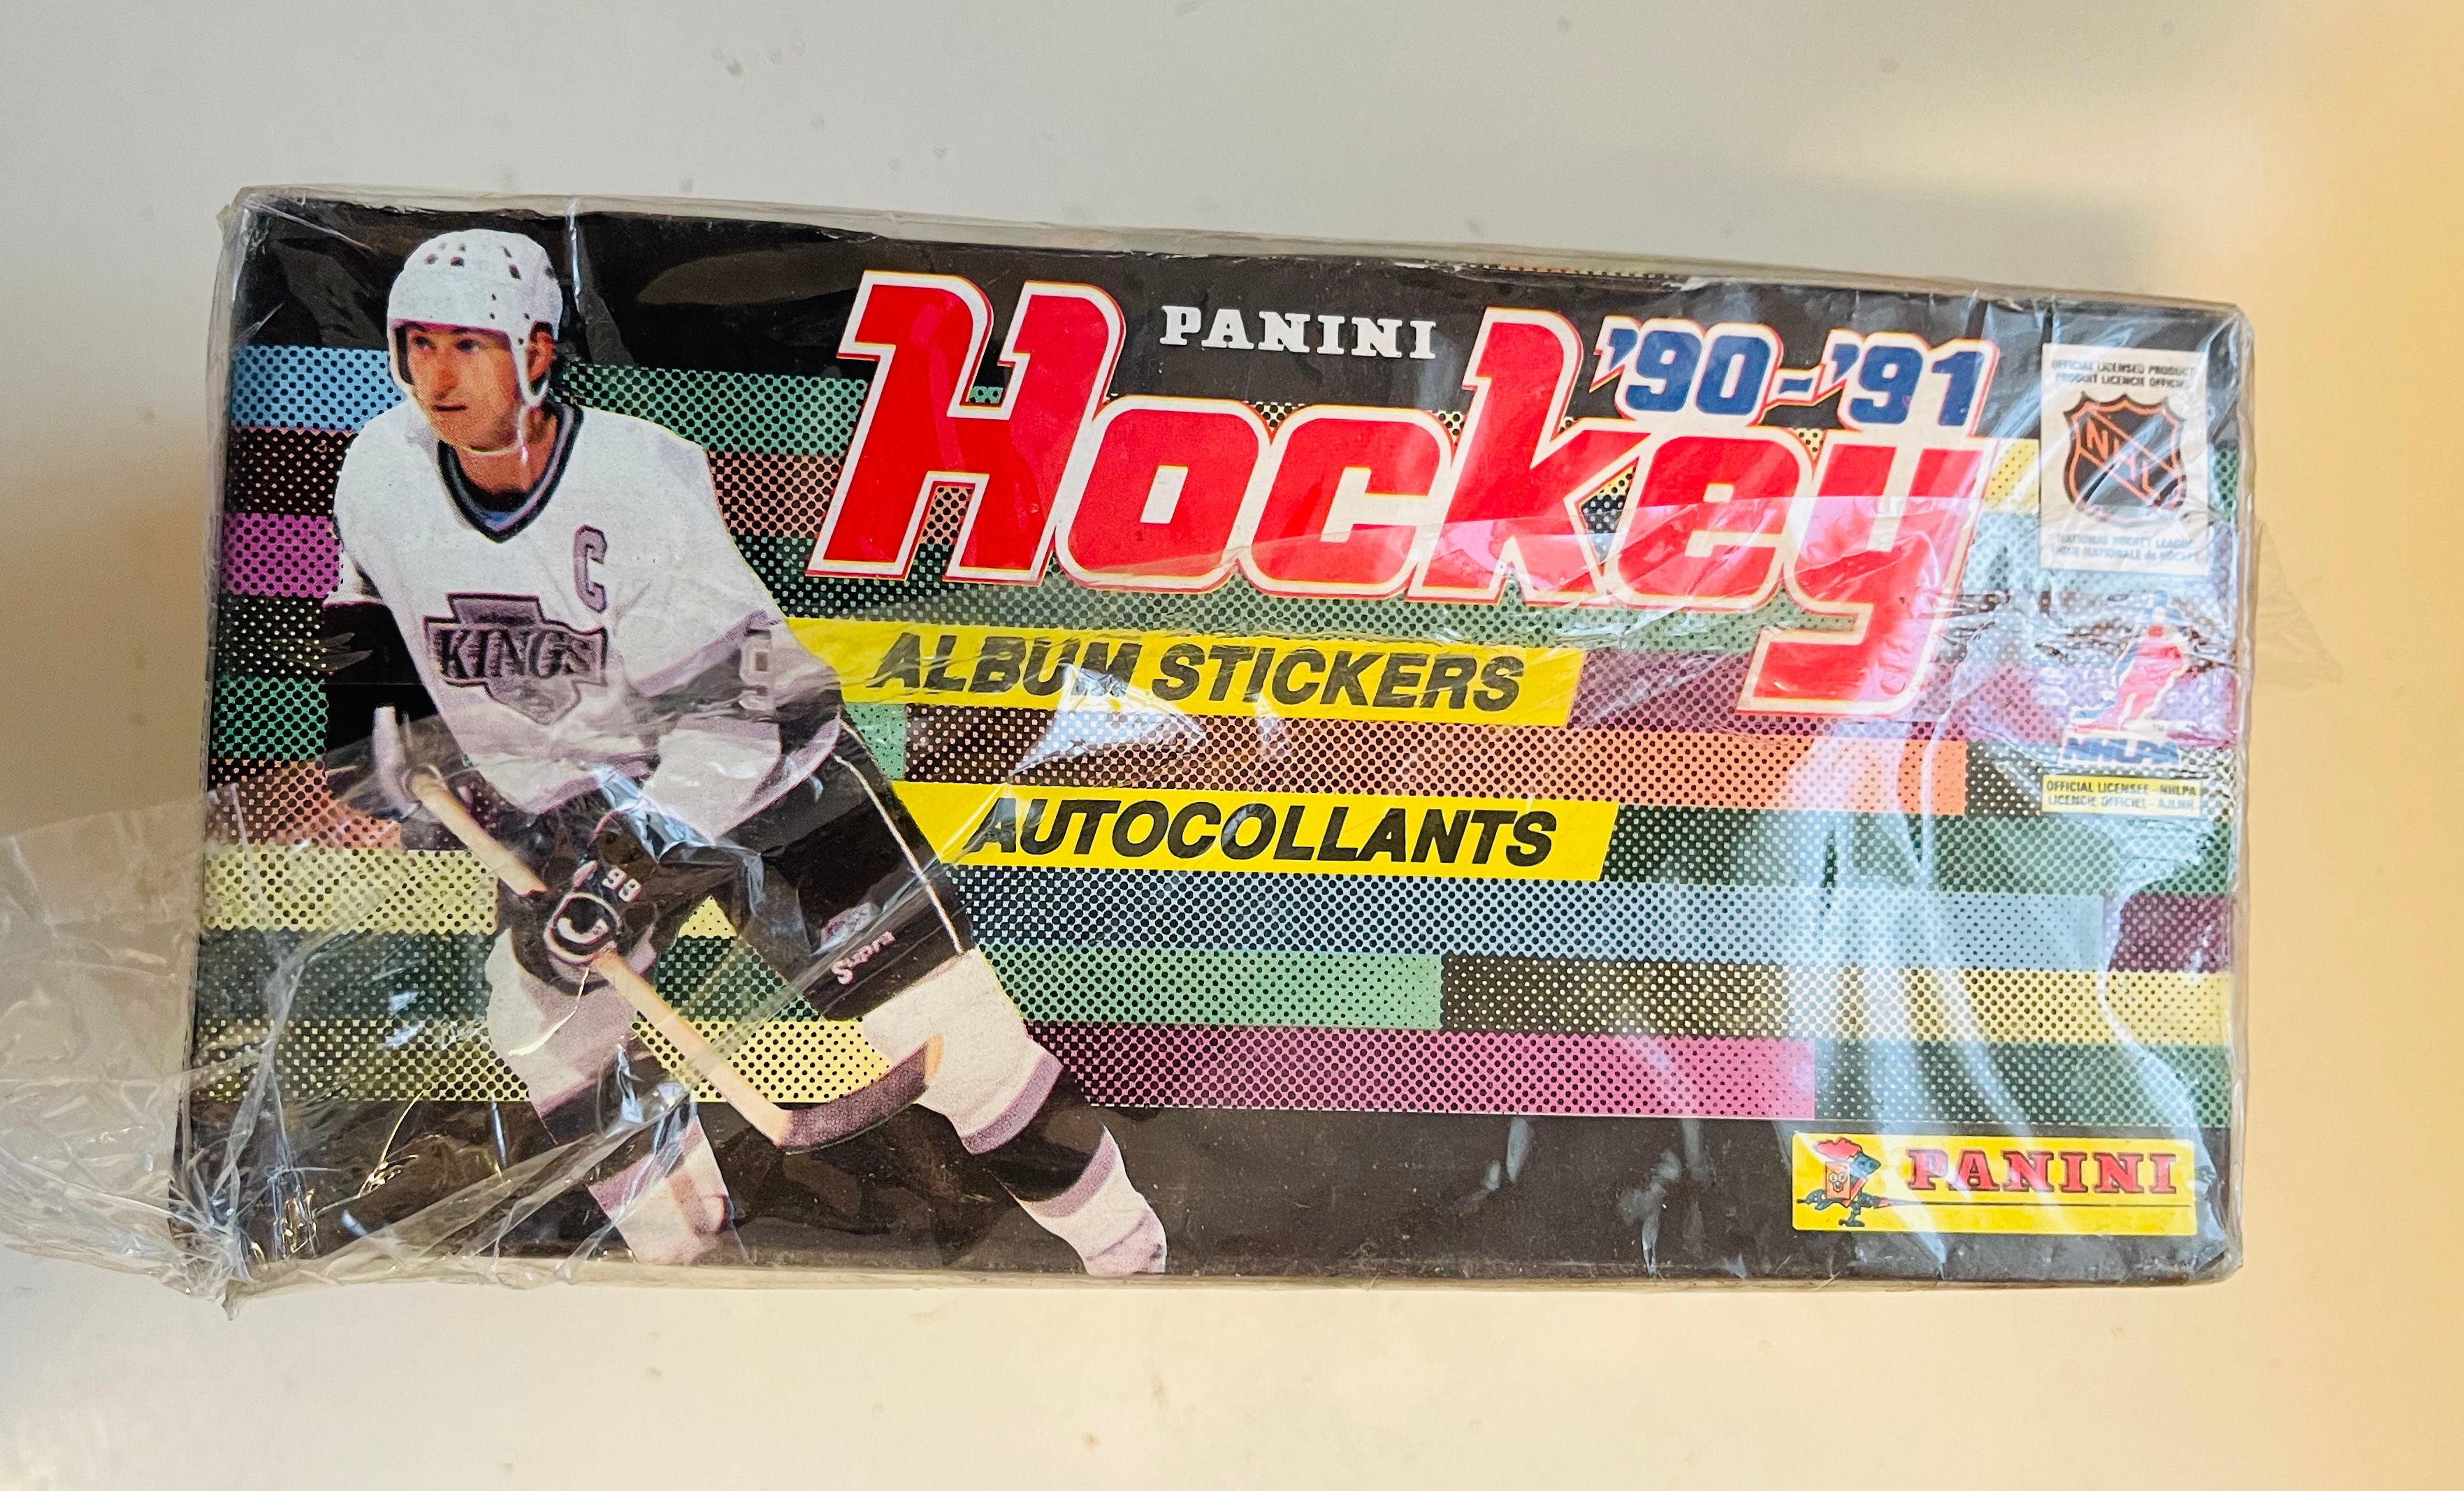 1990-91 Panini hockey stickers 100 packs box